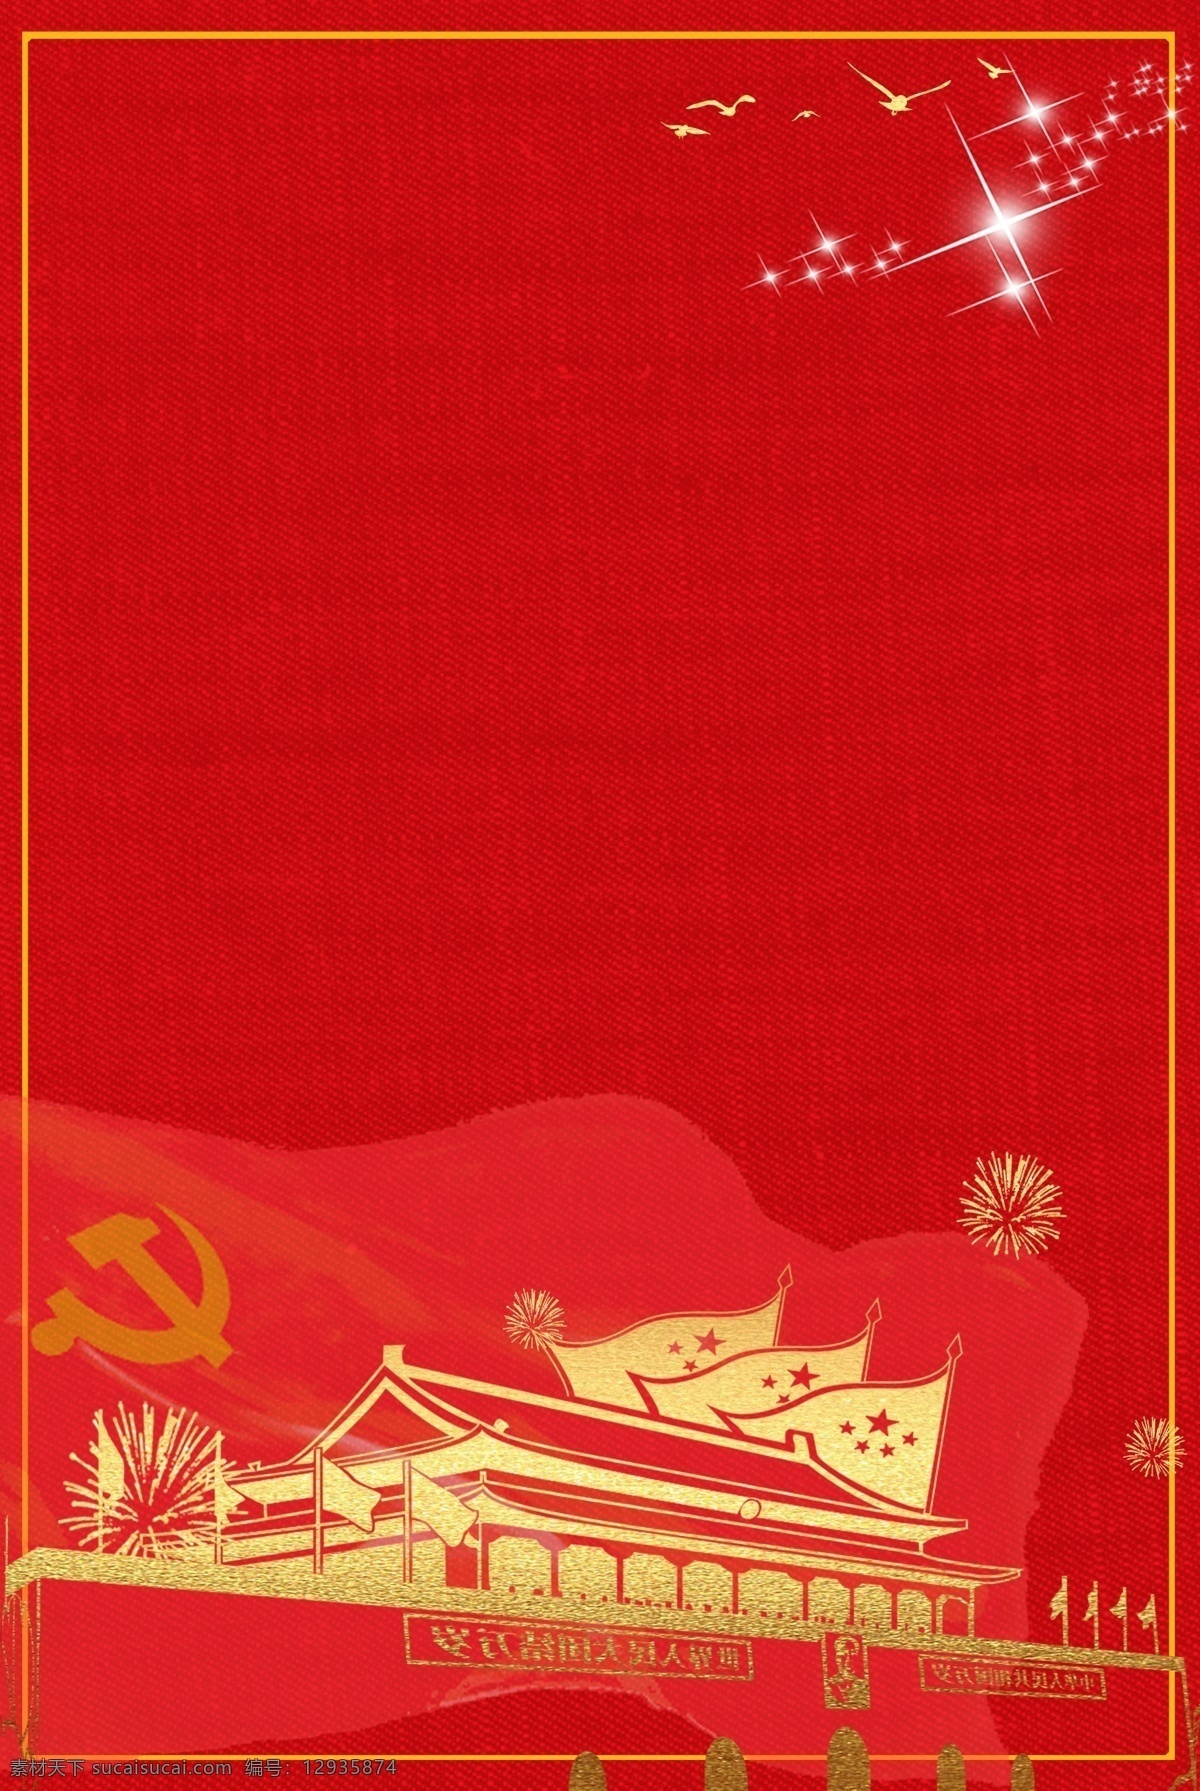 改革开放 四 十 周年 党建 合成 海报 红色背景 天安门 党徽 炫光 党建风 简约 创意